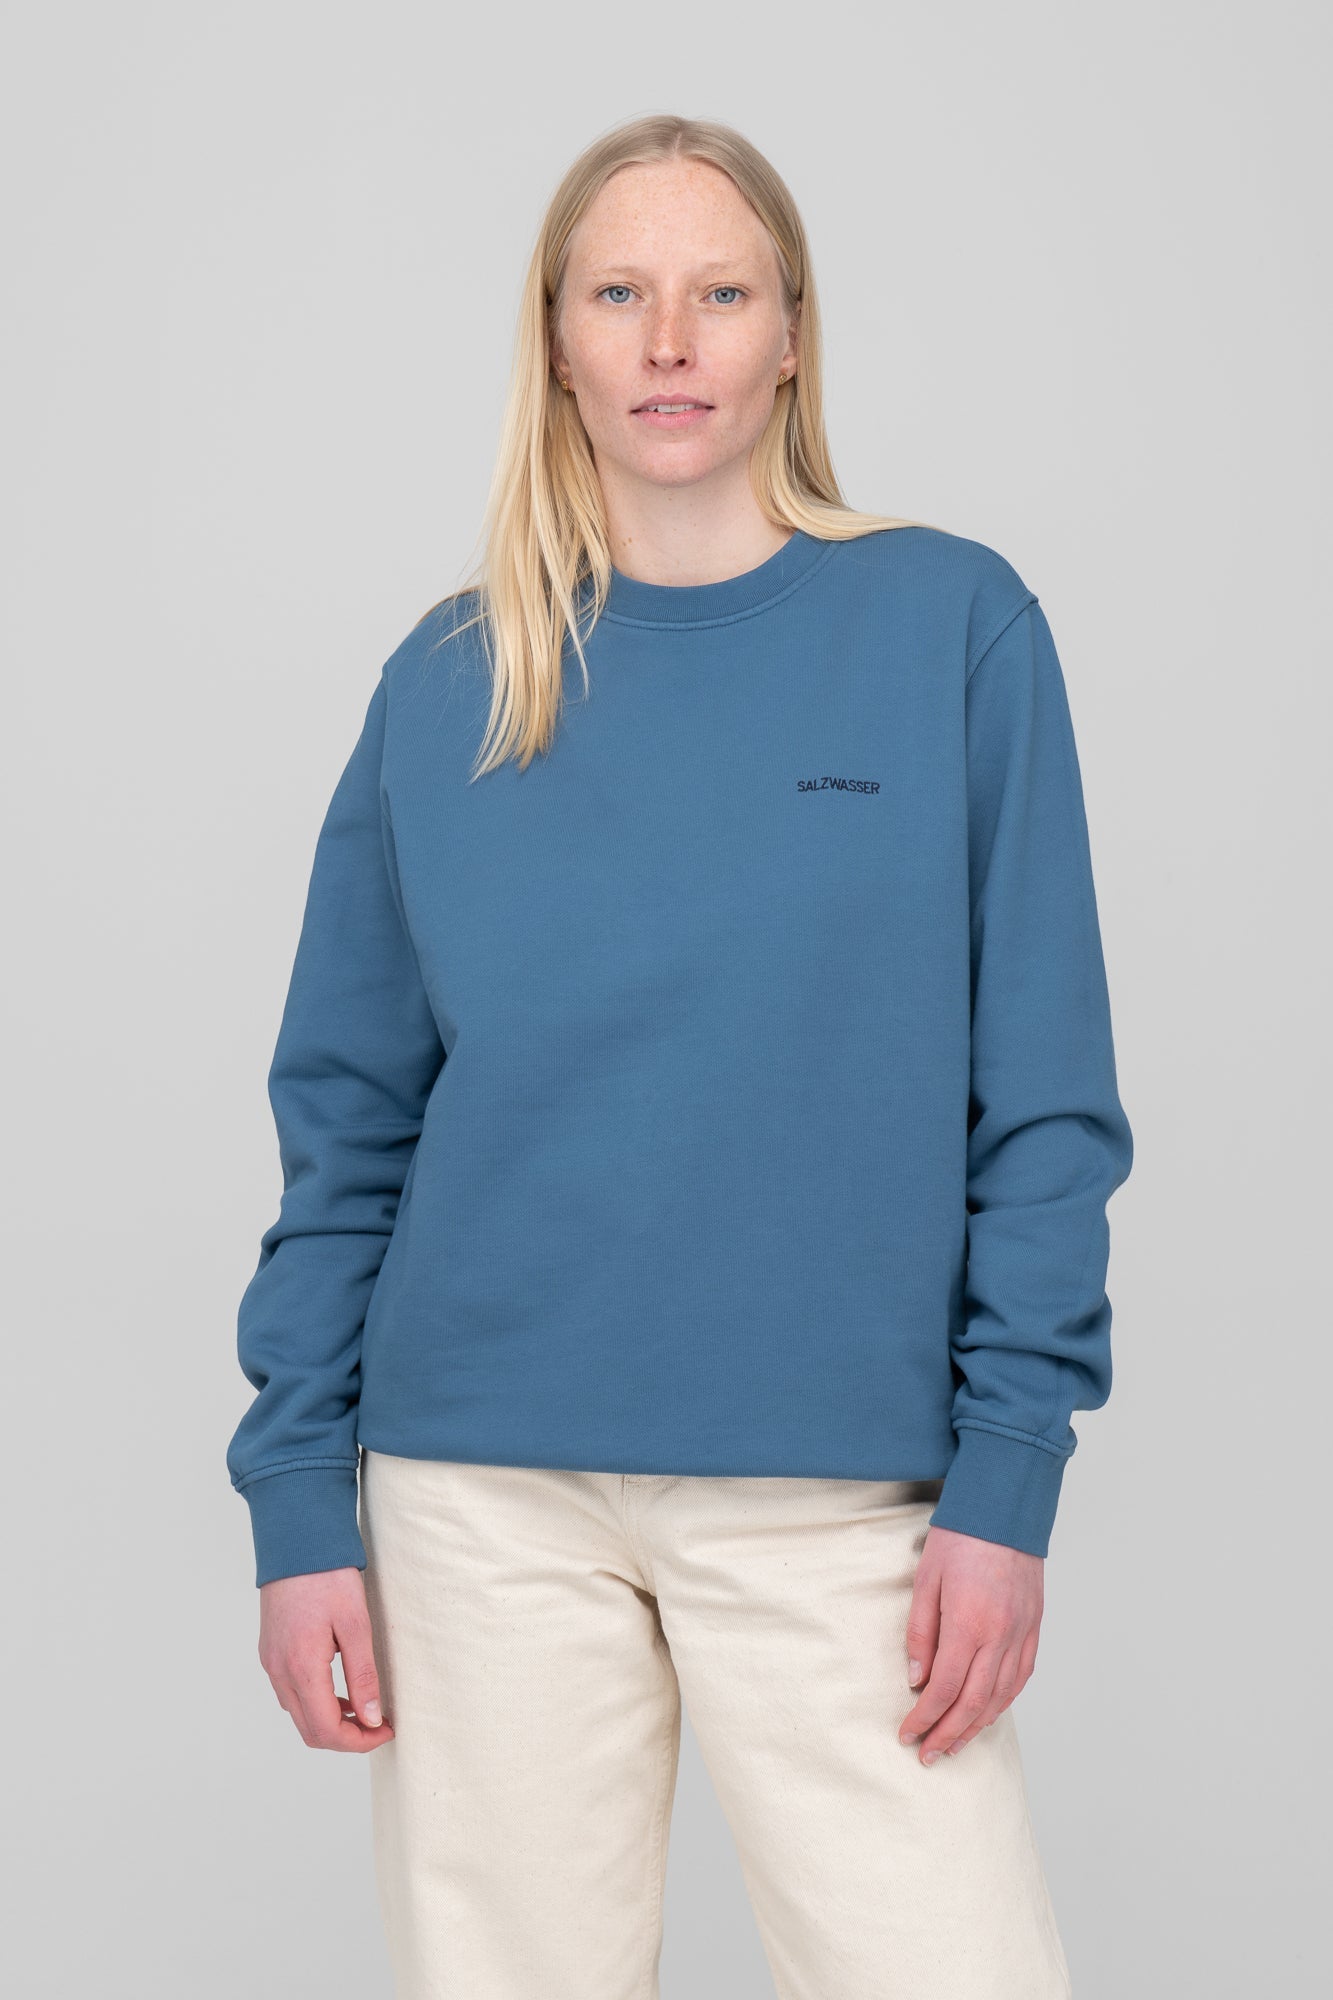 Unisex Sweater von SALZWASSER in Indigo an Frau_women